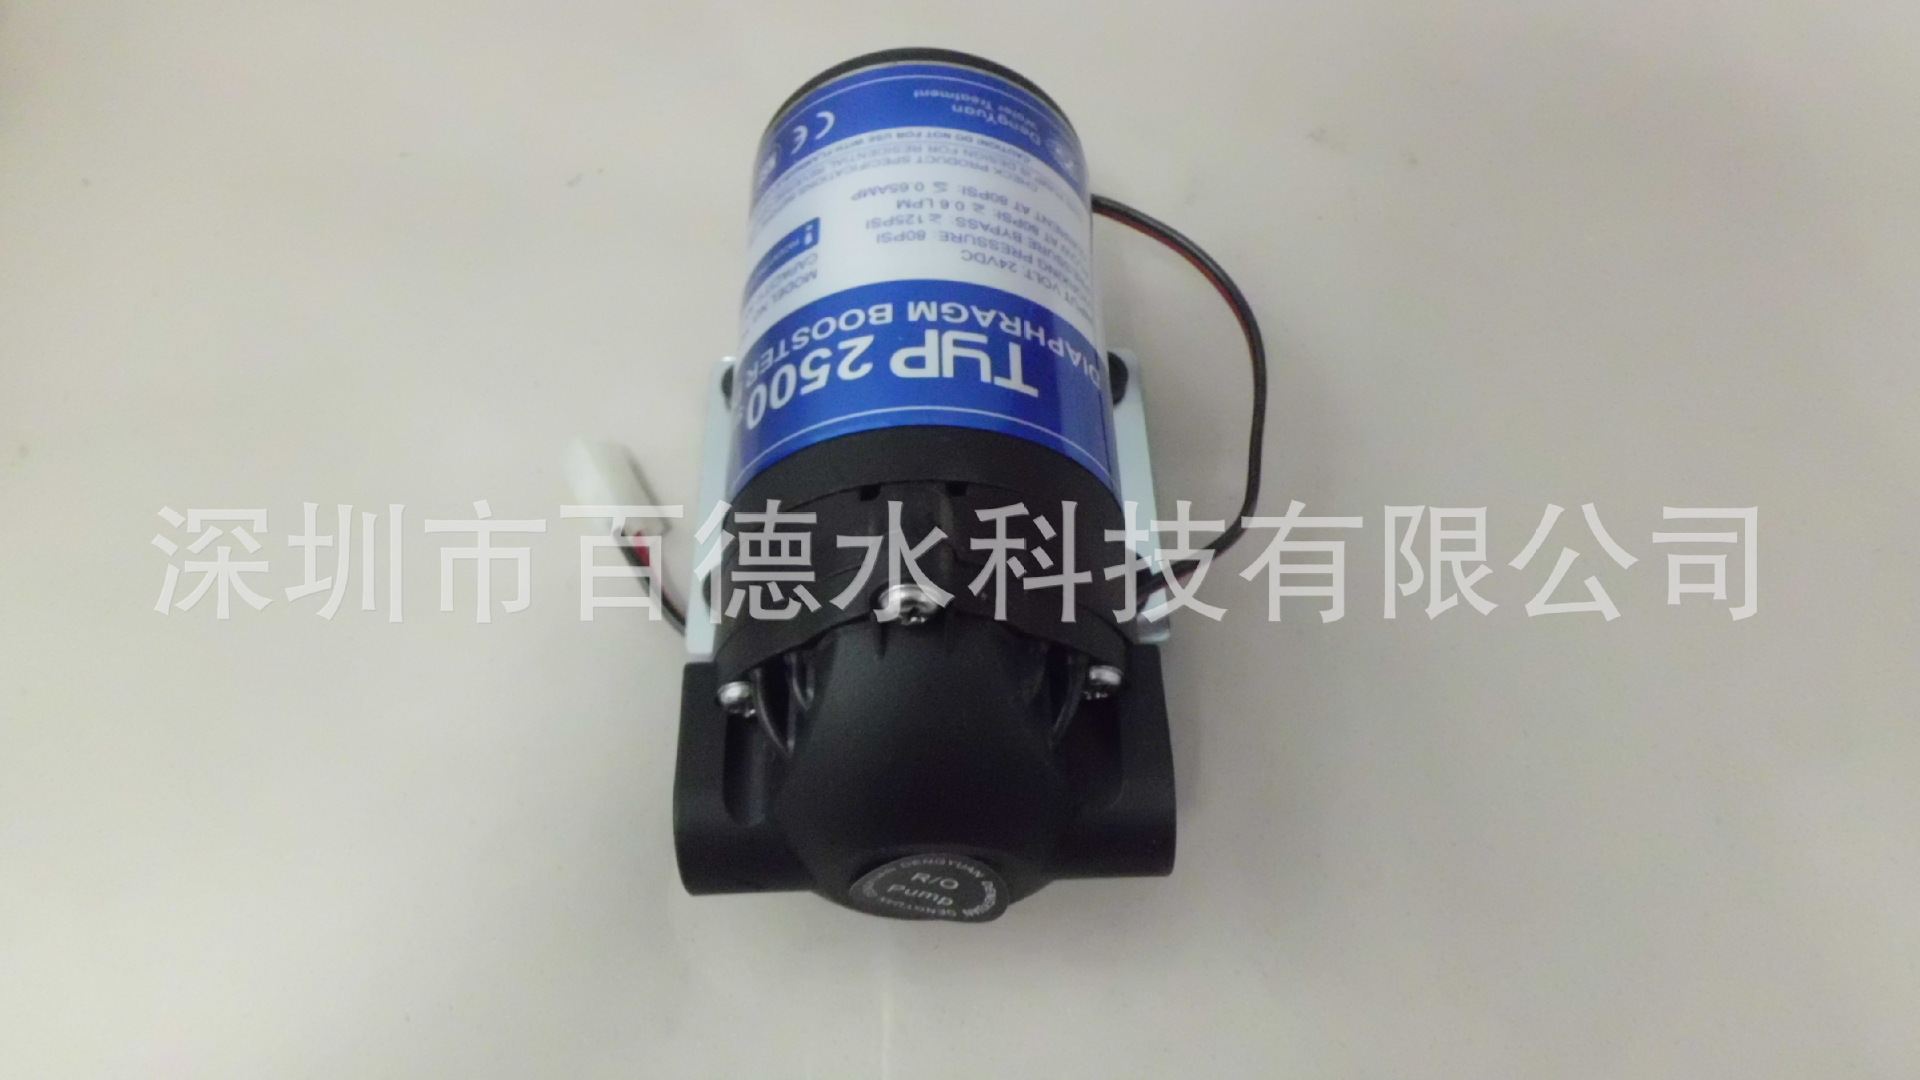 50g鄧元增壓水泵 (2)